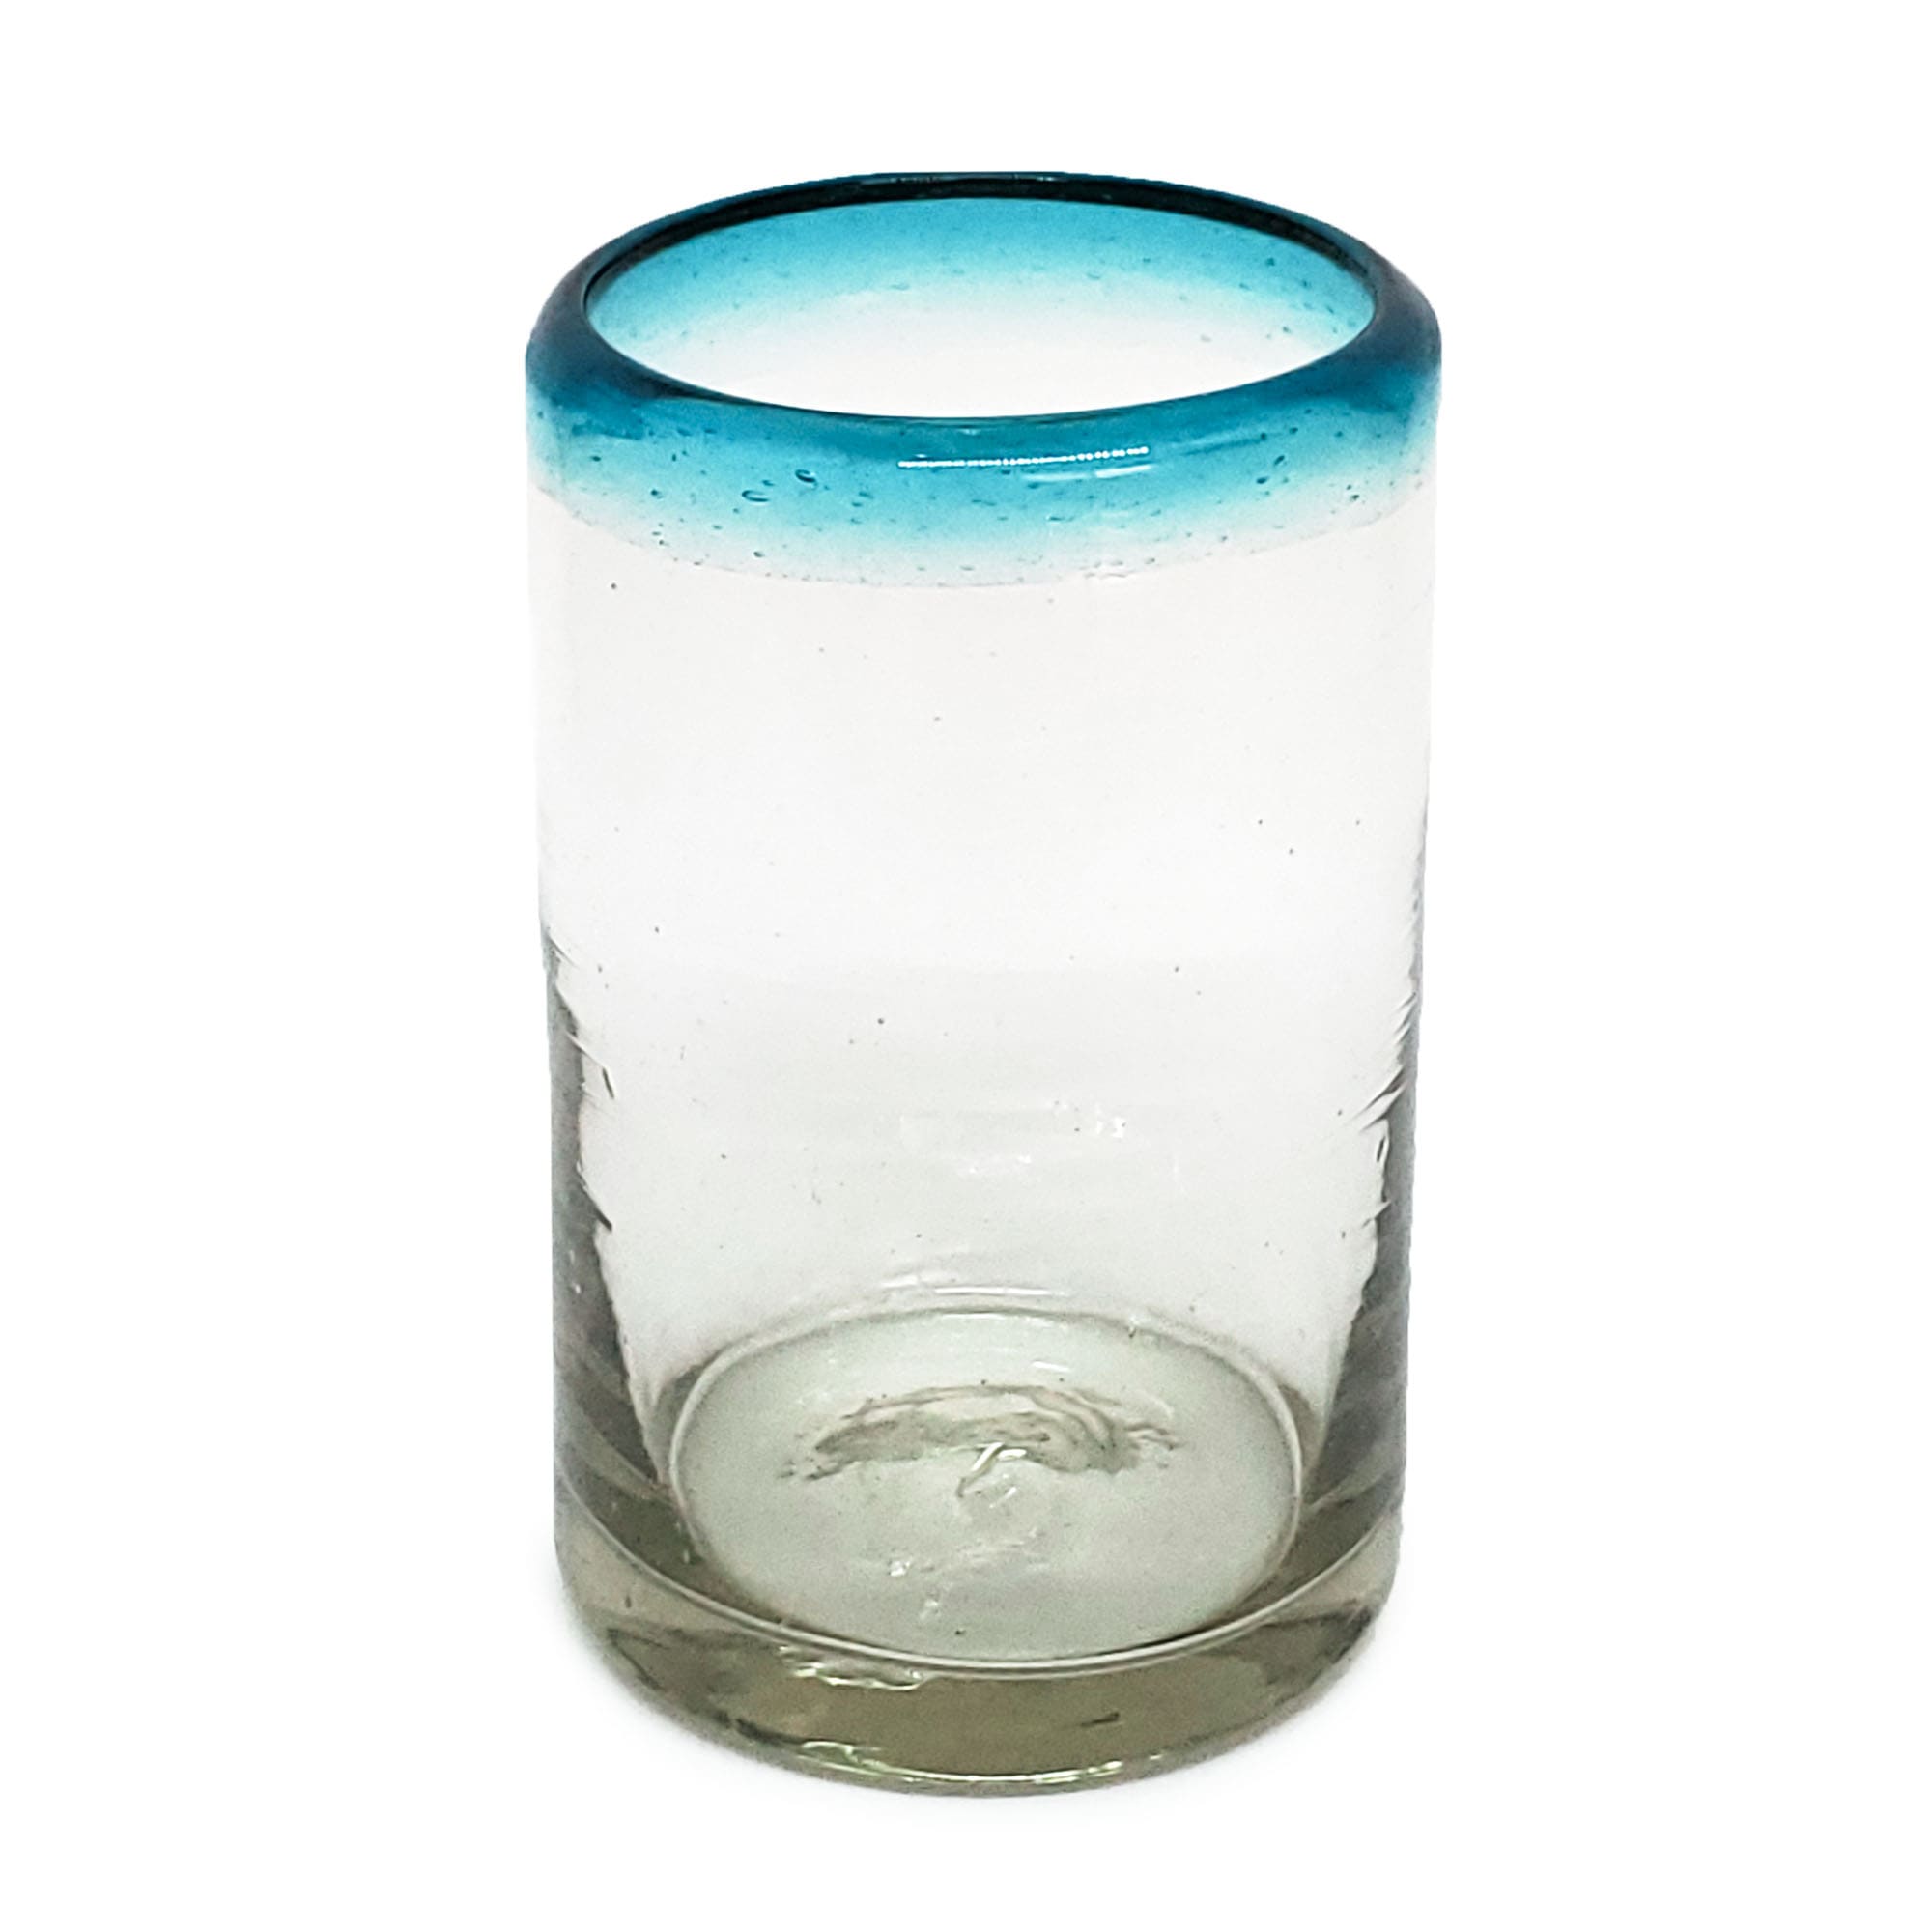 Vasos de Vidrio Soplado / Juego de 6 vasos para jugo con borde azul aqua / Éstos vasos tienen el tamaño exacto para disfrutar jugo fresco de frutas por la mañana.